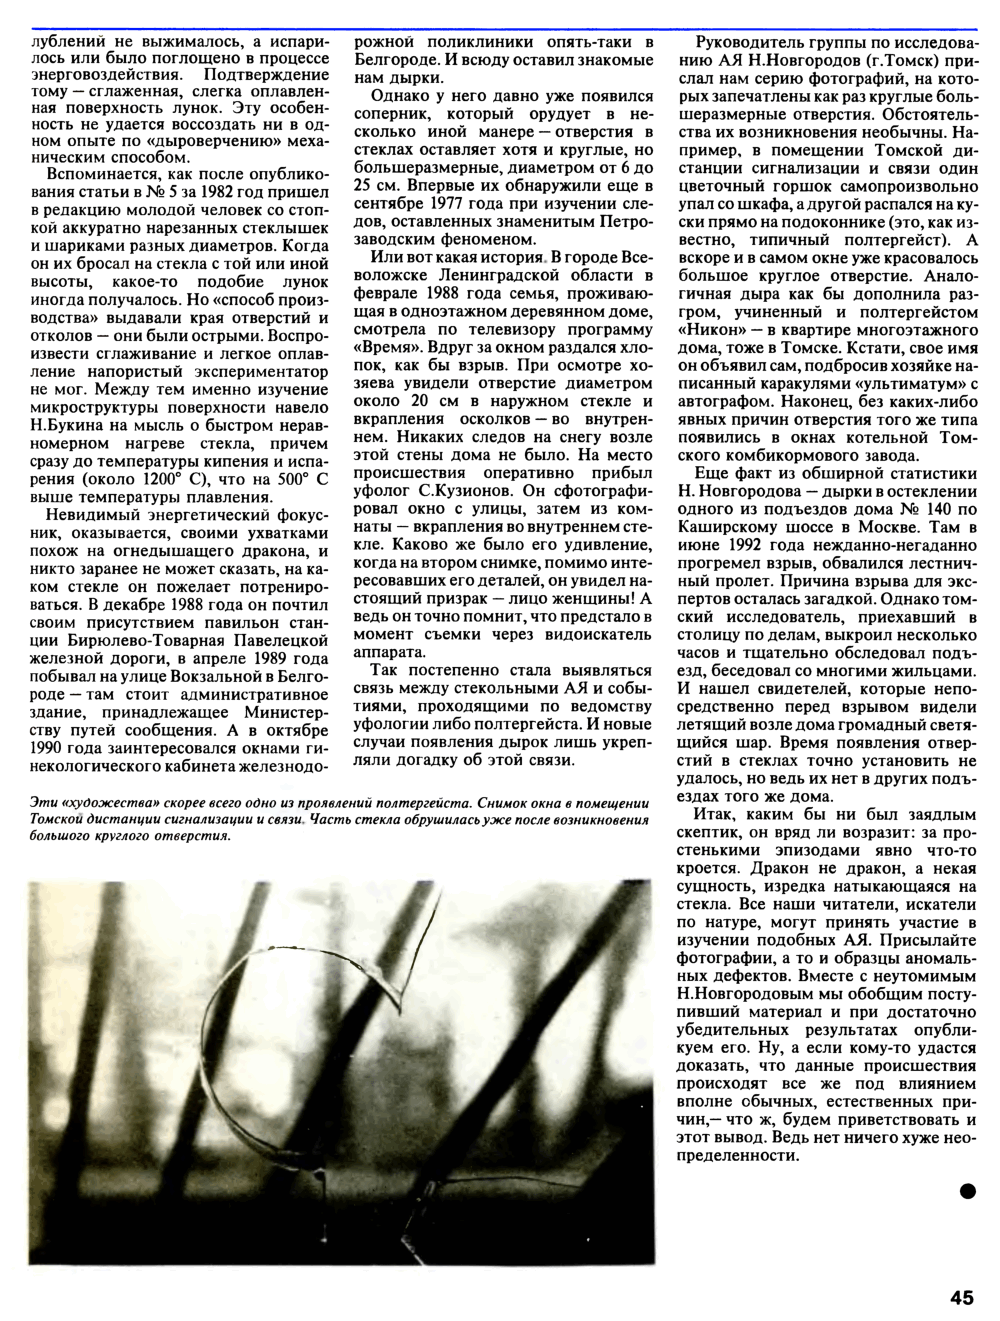 Дракон тренируется на стеклах. П. Александров. Техника — Молодёжи, 1993, №4, с.44-45. Фотокопия №2